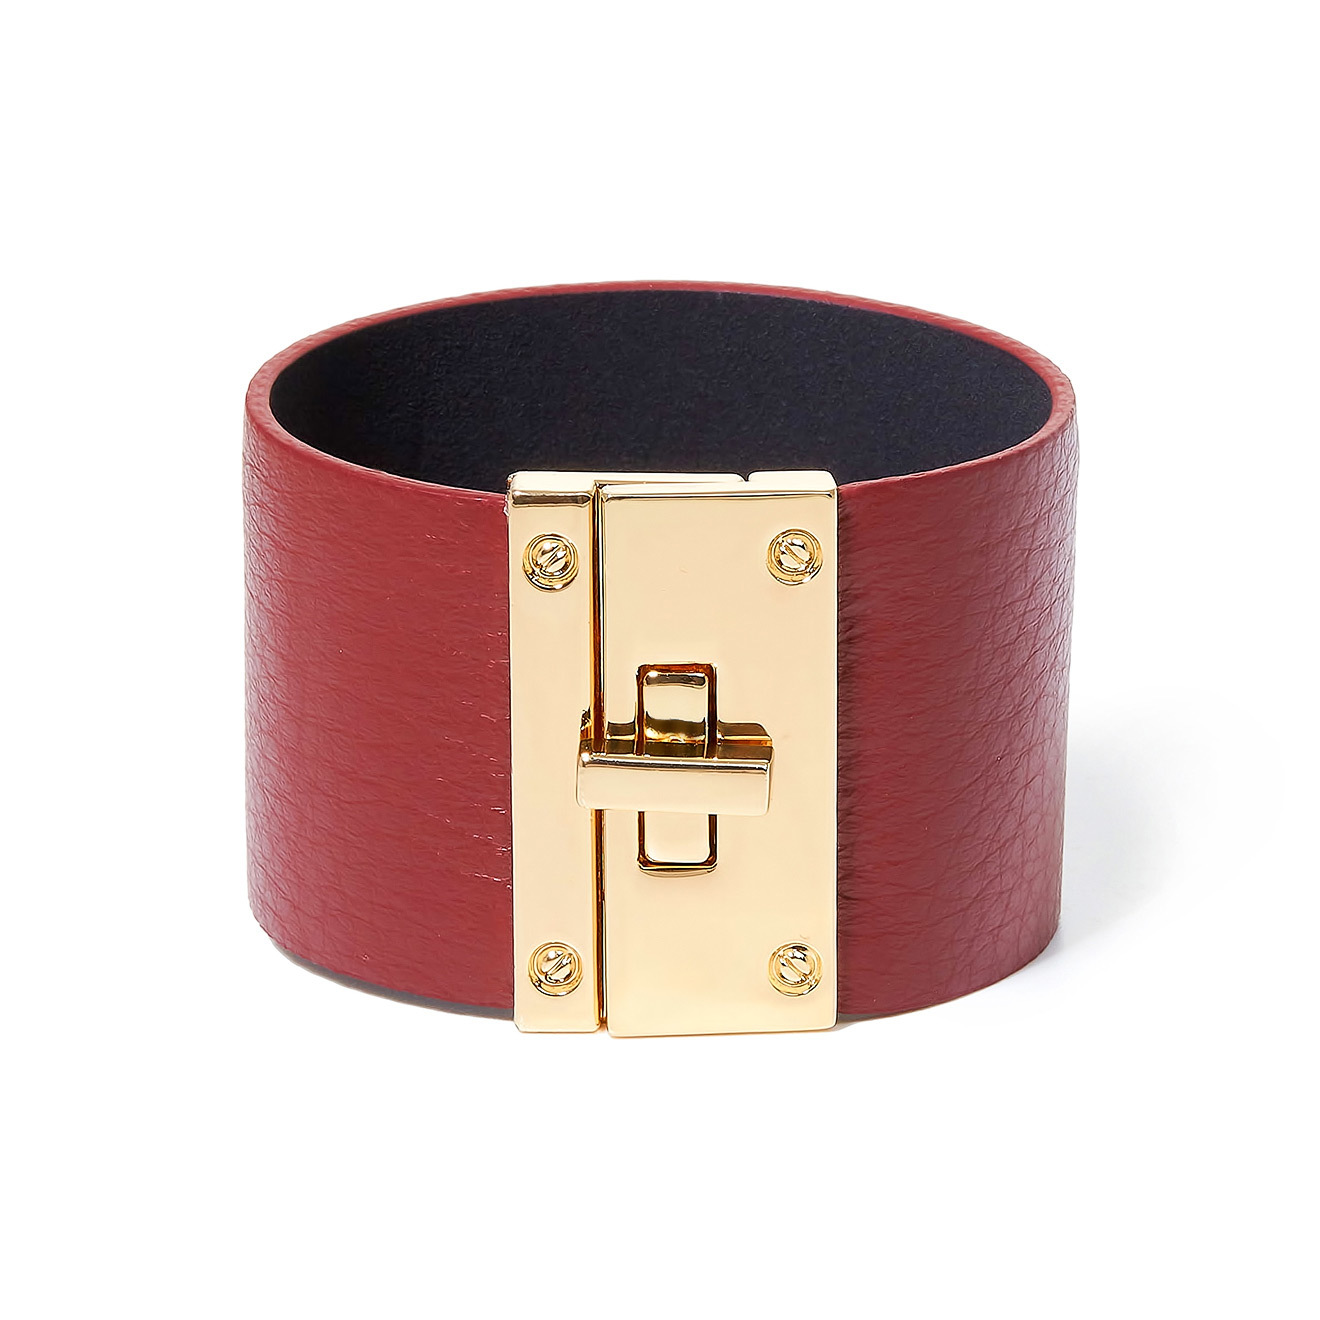 Tannum Бордовый кожаный браслет с металлическим замком tannum бежевый кожаный браслет с золотистым квадратом